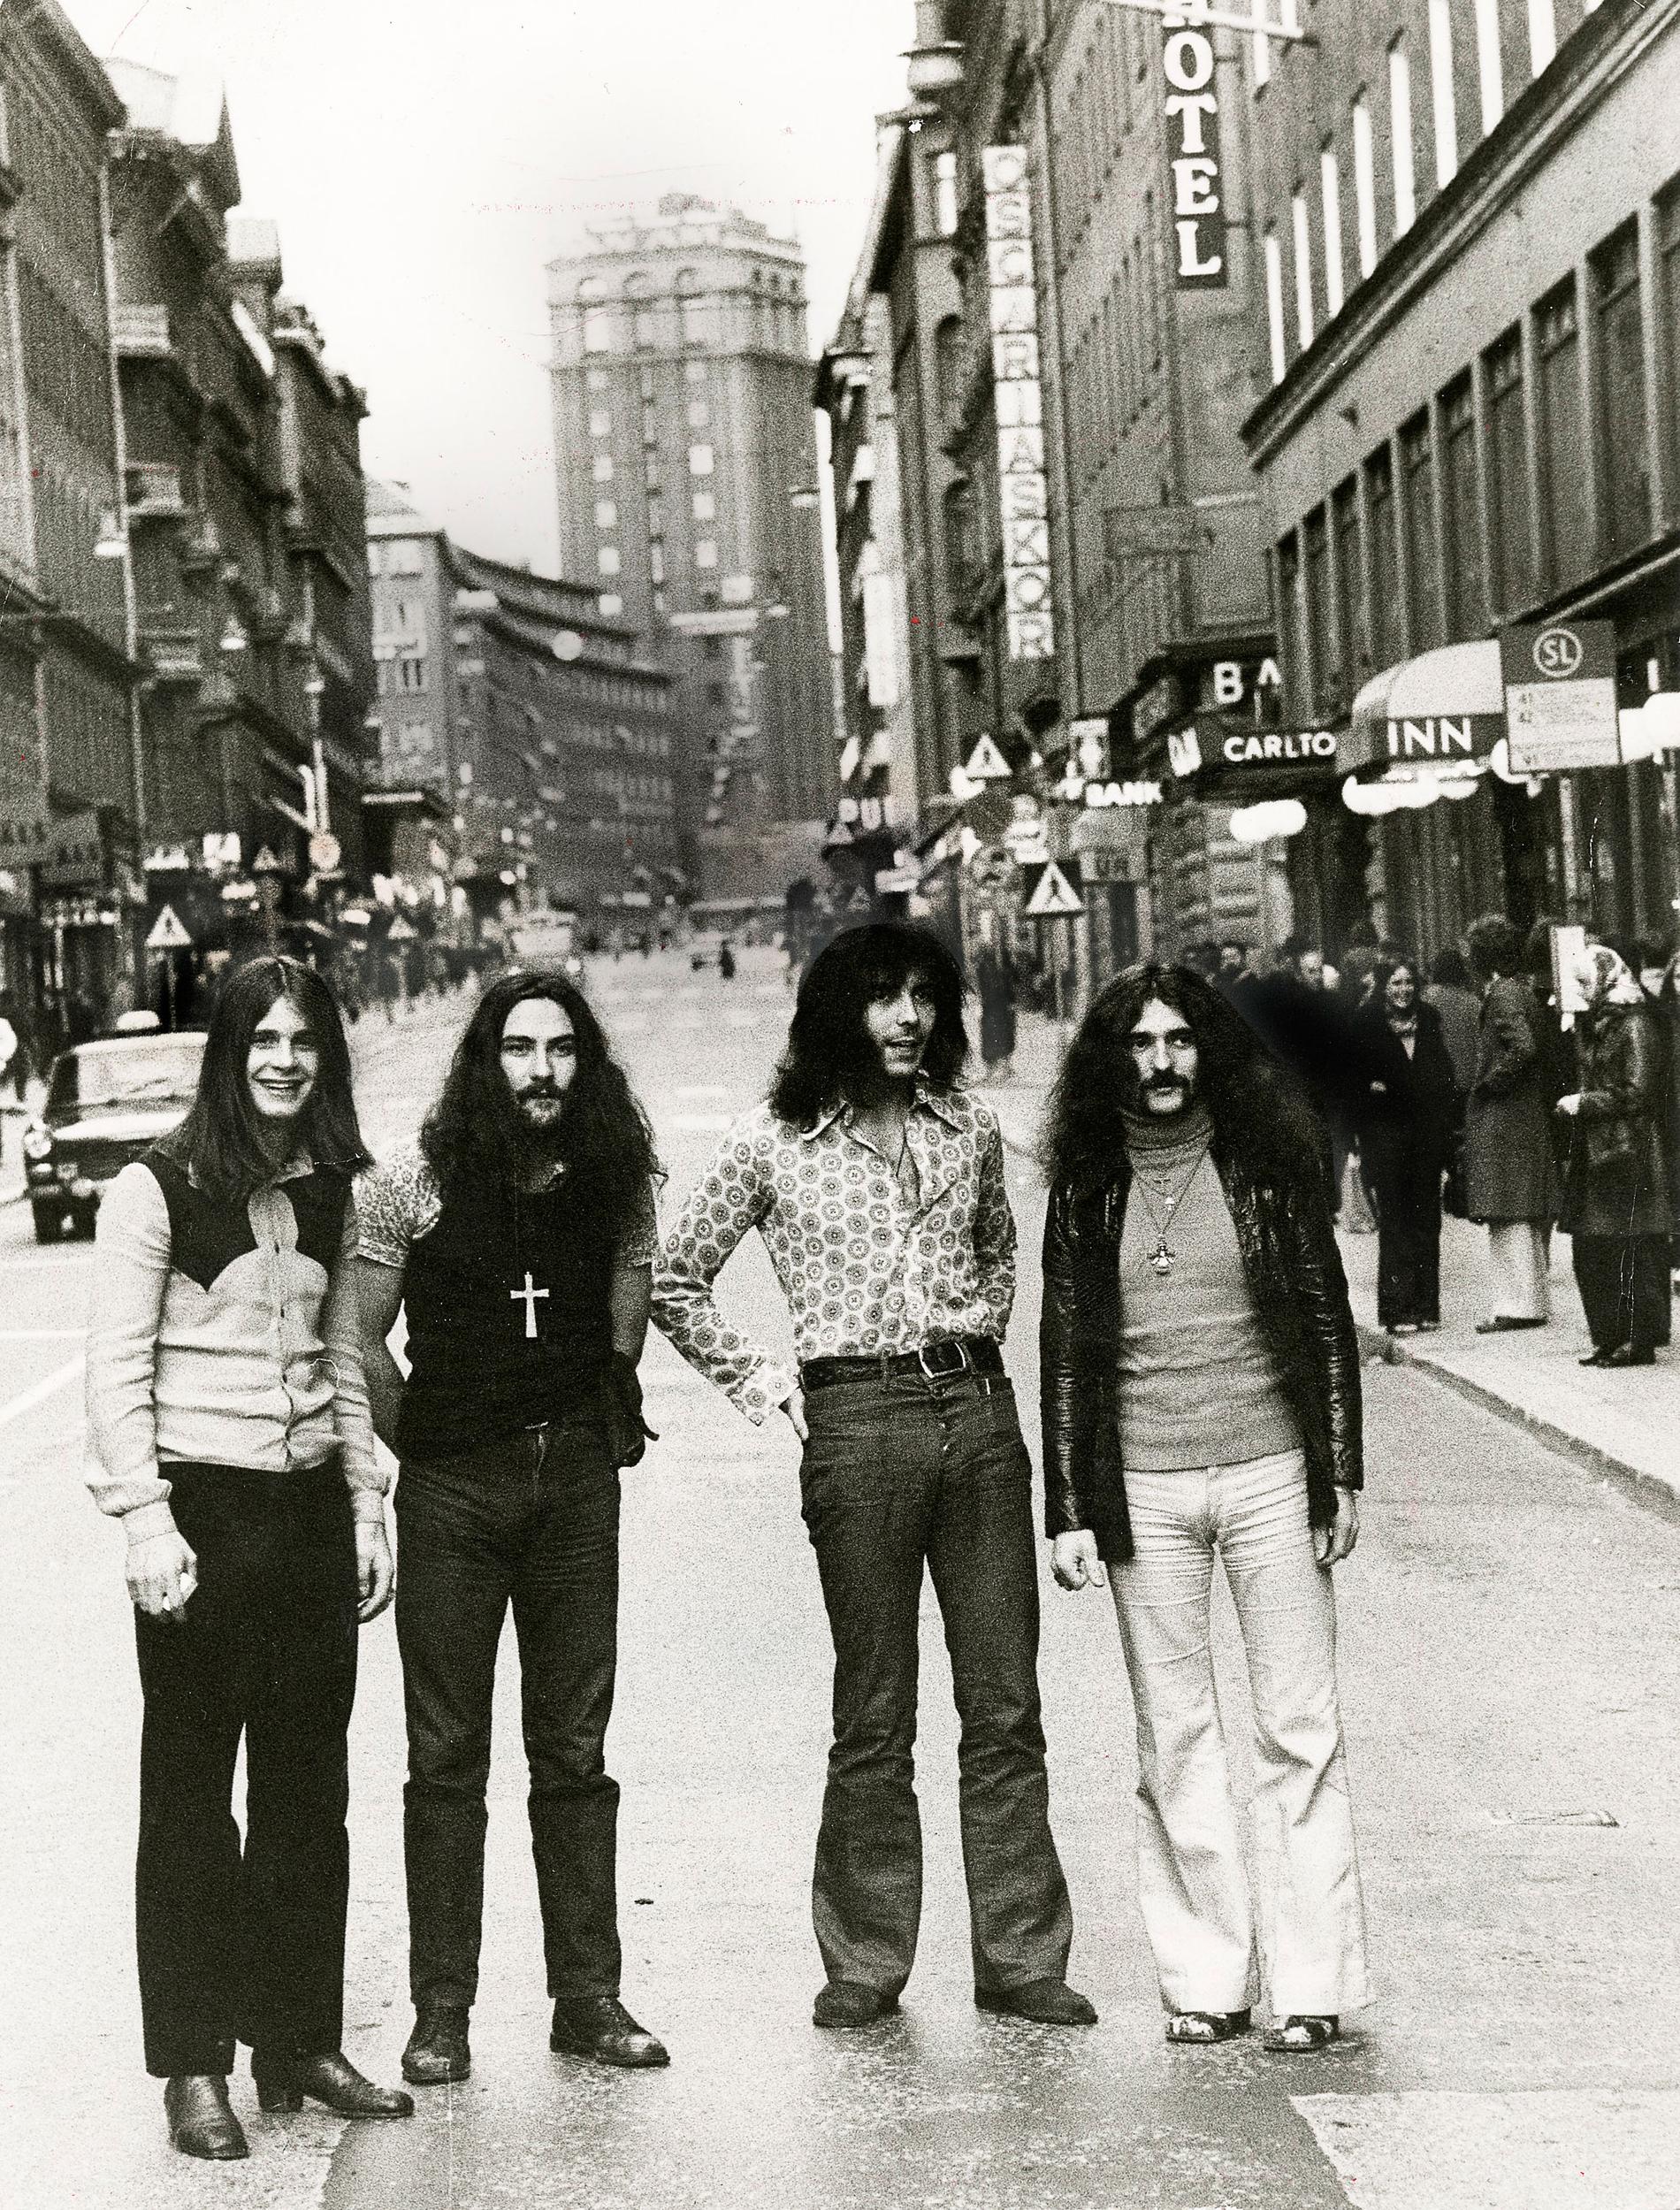 Från vänster: Ozzy Osbourne, Bill Ward, Tony Iommi och Geezer Butler.